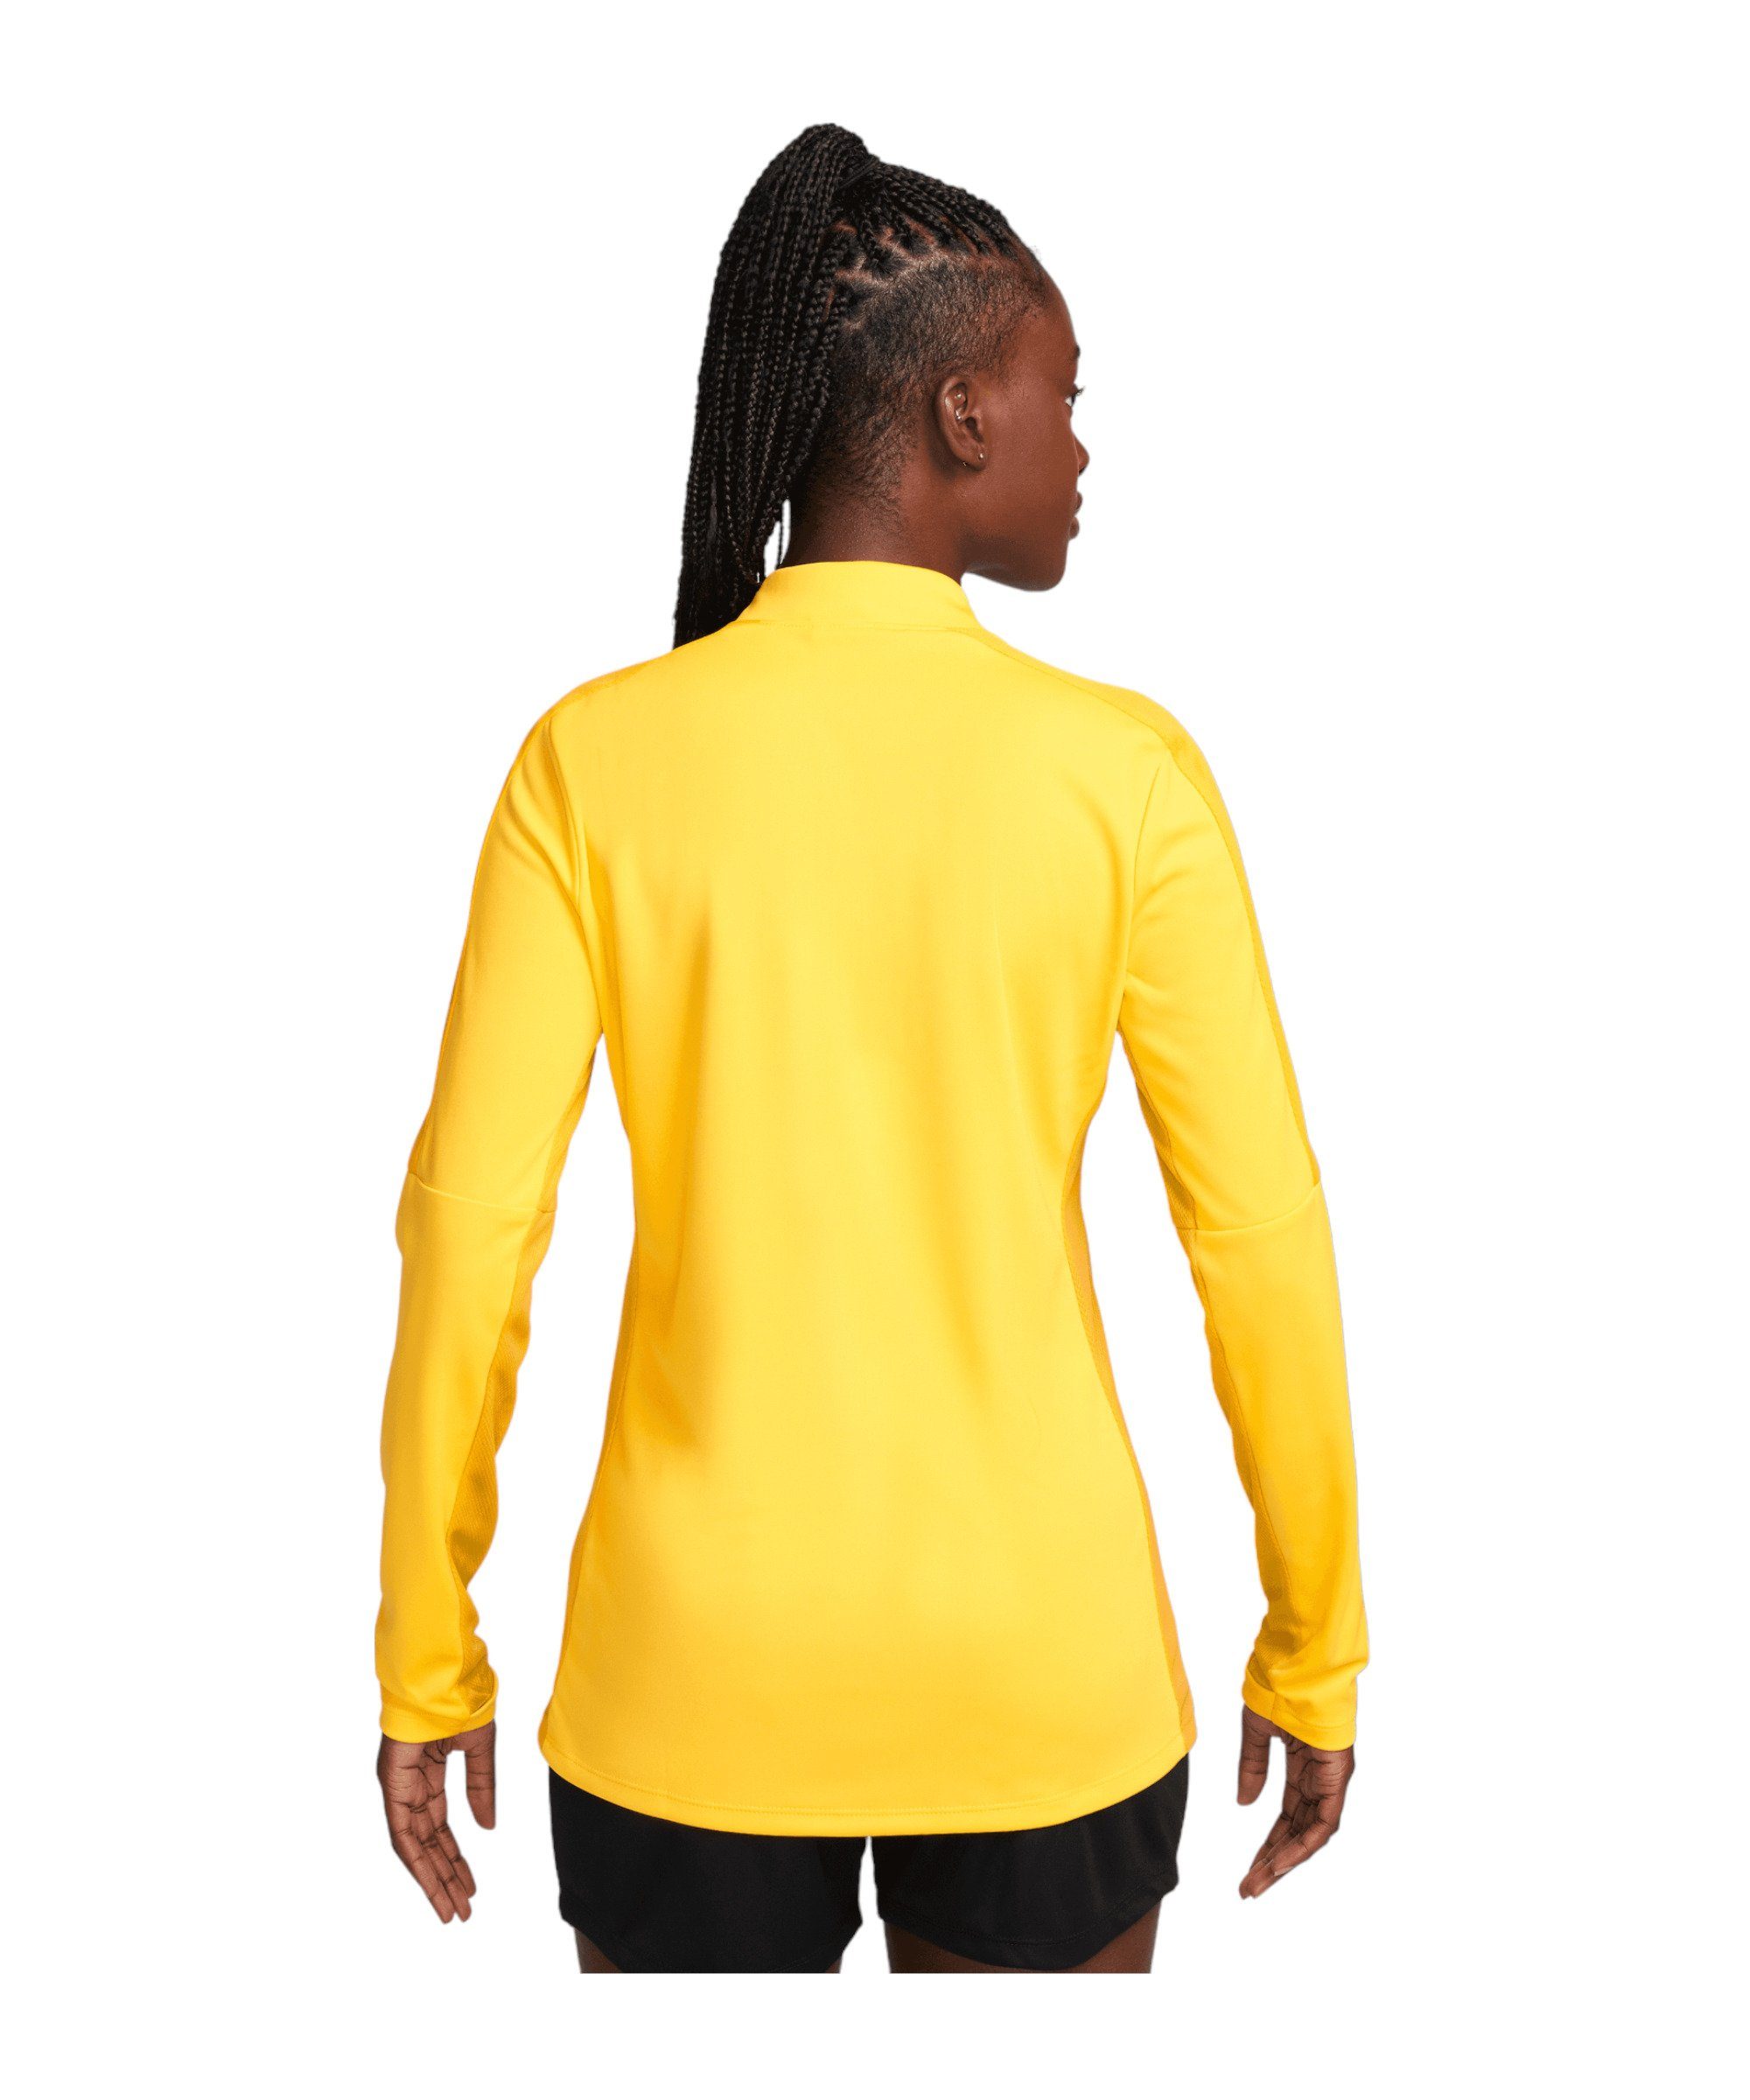 Academy Damen Sweater Top gelbgoldschwarz 23 Drill Nike